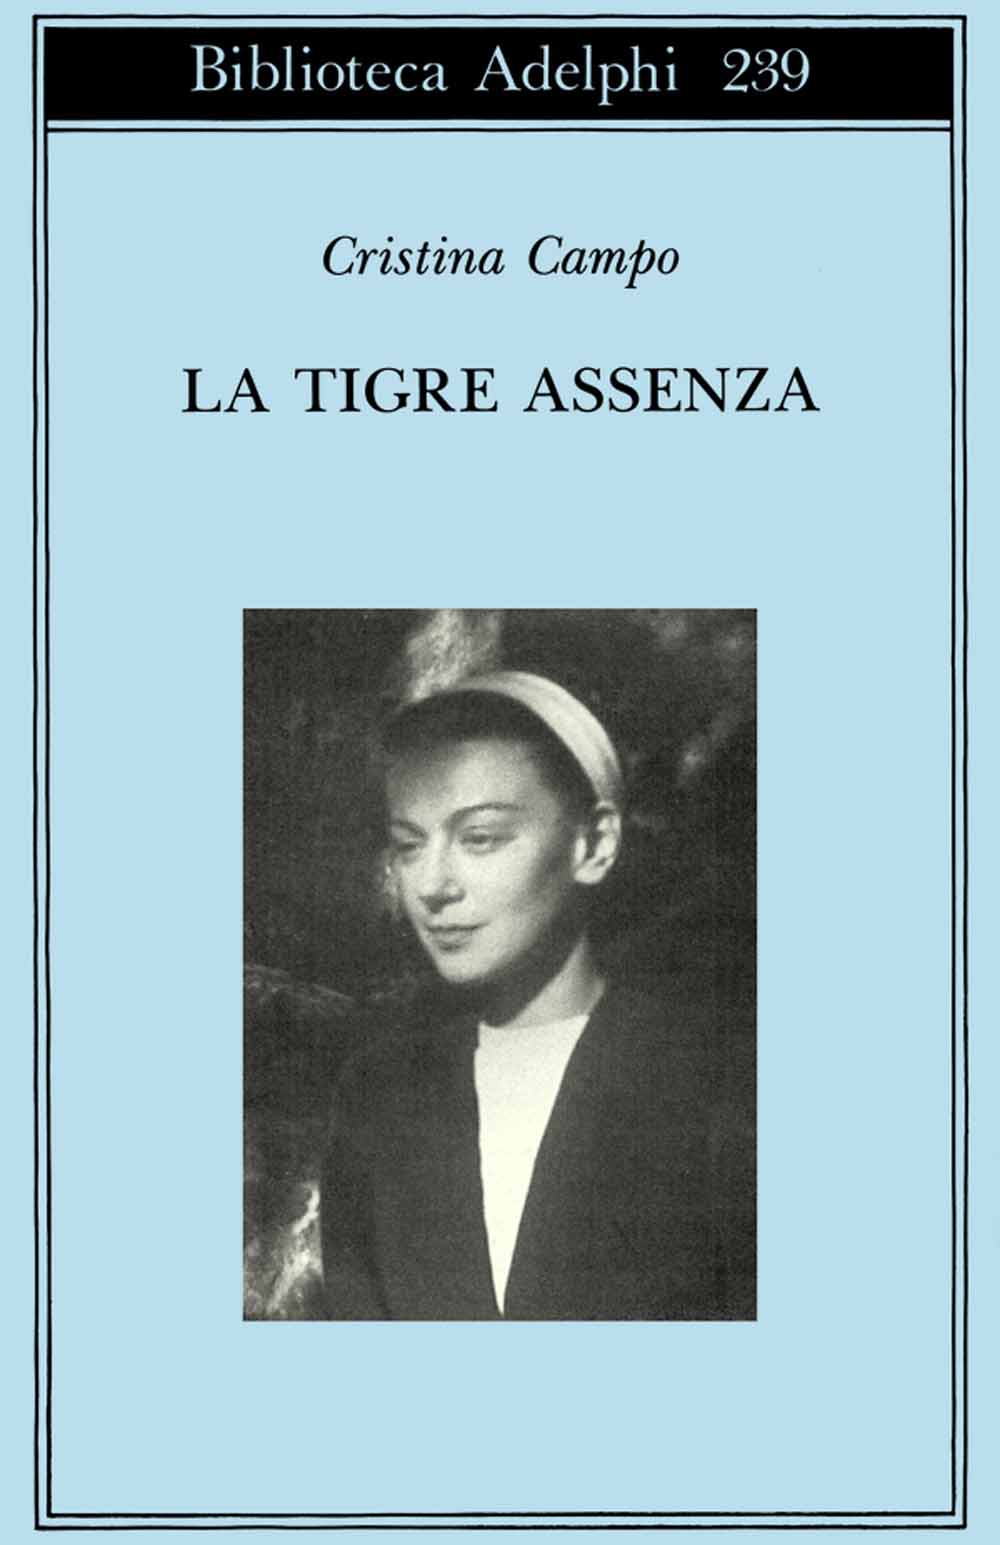 Libri Cristina Campo - La Tigre Assenza NUOVO SIGILLATO, EDIZIONE DEL 26/08/1991 SUBITO DISPONIBILE